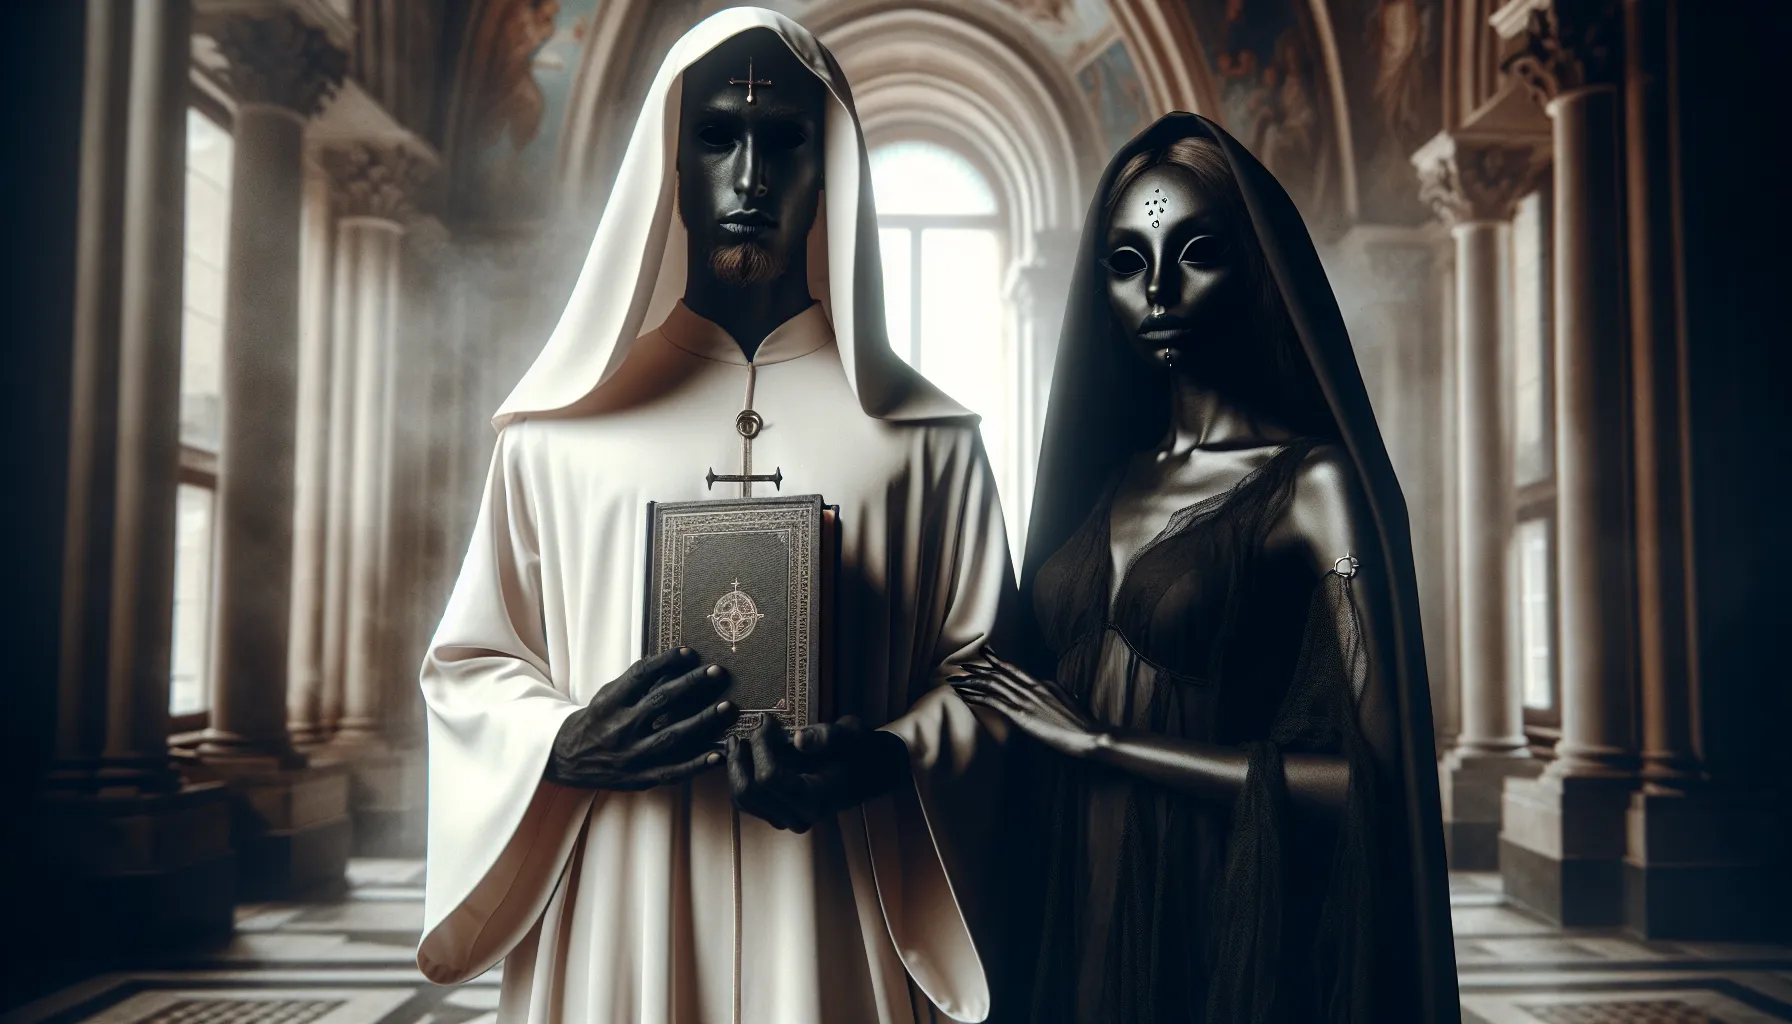 Imagen ilustrativa de dos figuras misteriosas sosteniendo un libro sagrado, representando a los dos Testigos del Apocalipsis según la Biblia.